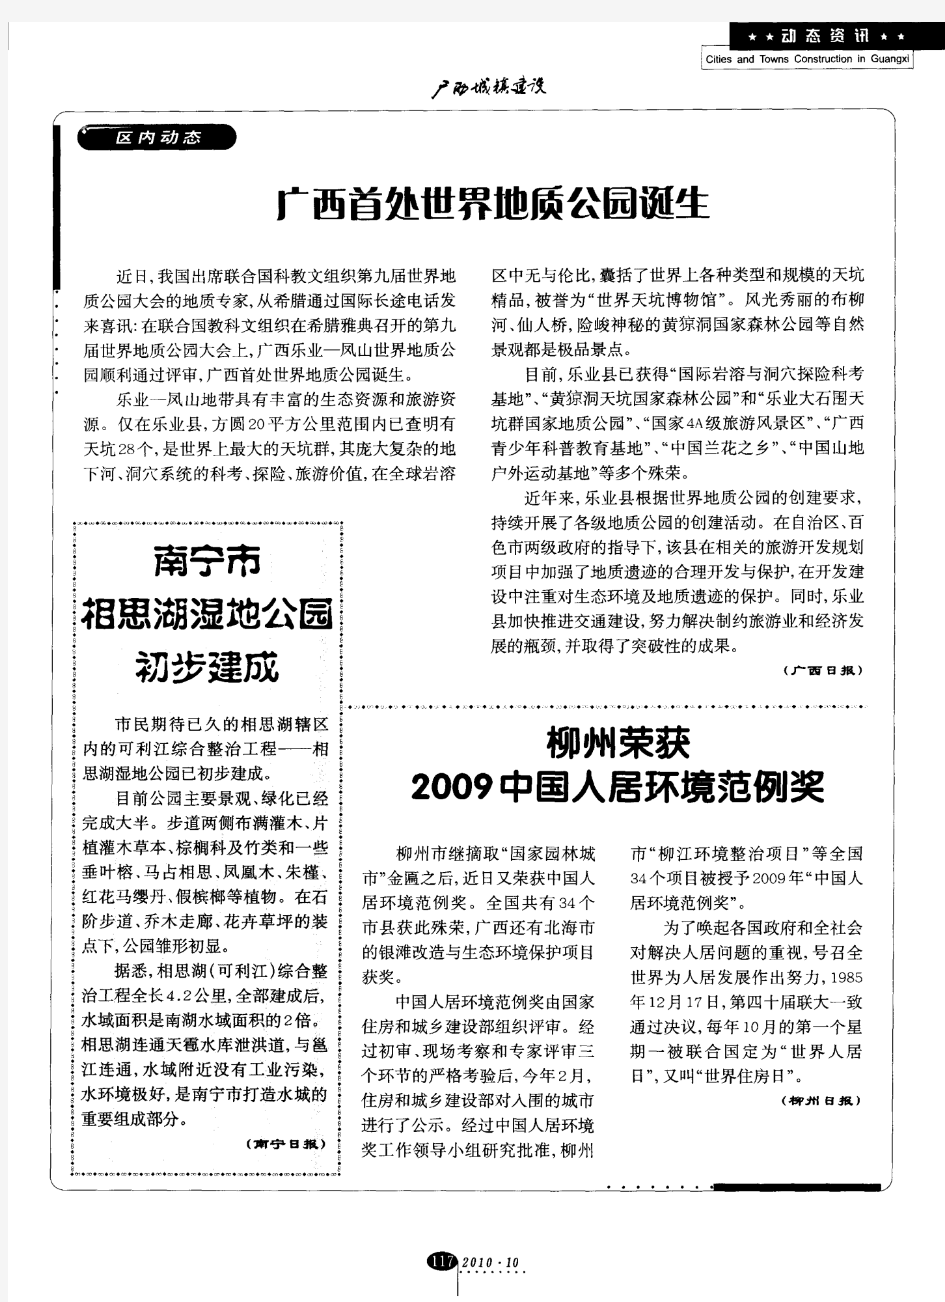 柳州荣获2009中国人居环境范例奖